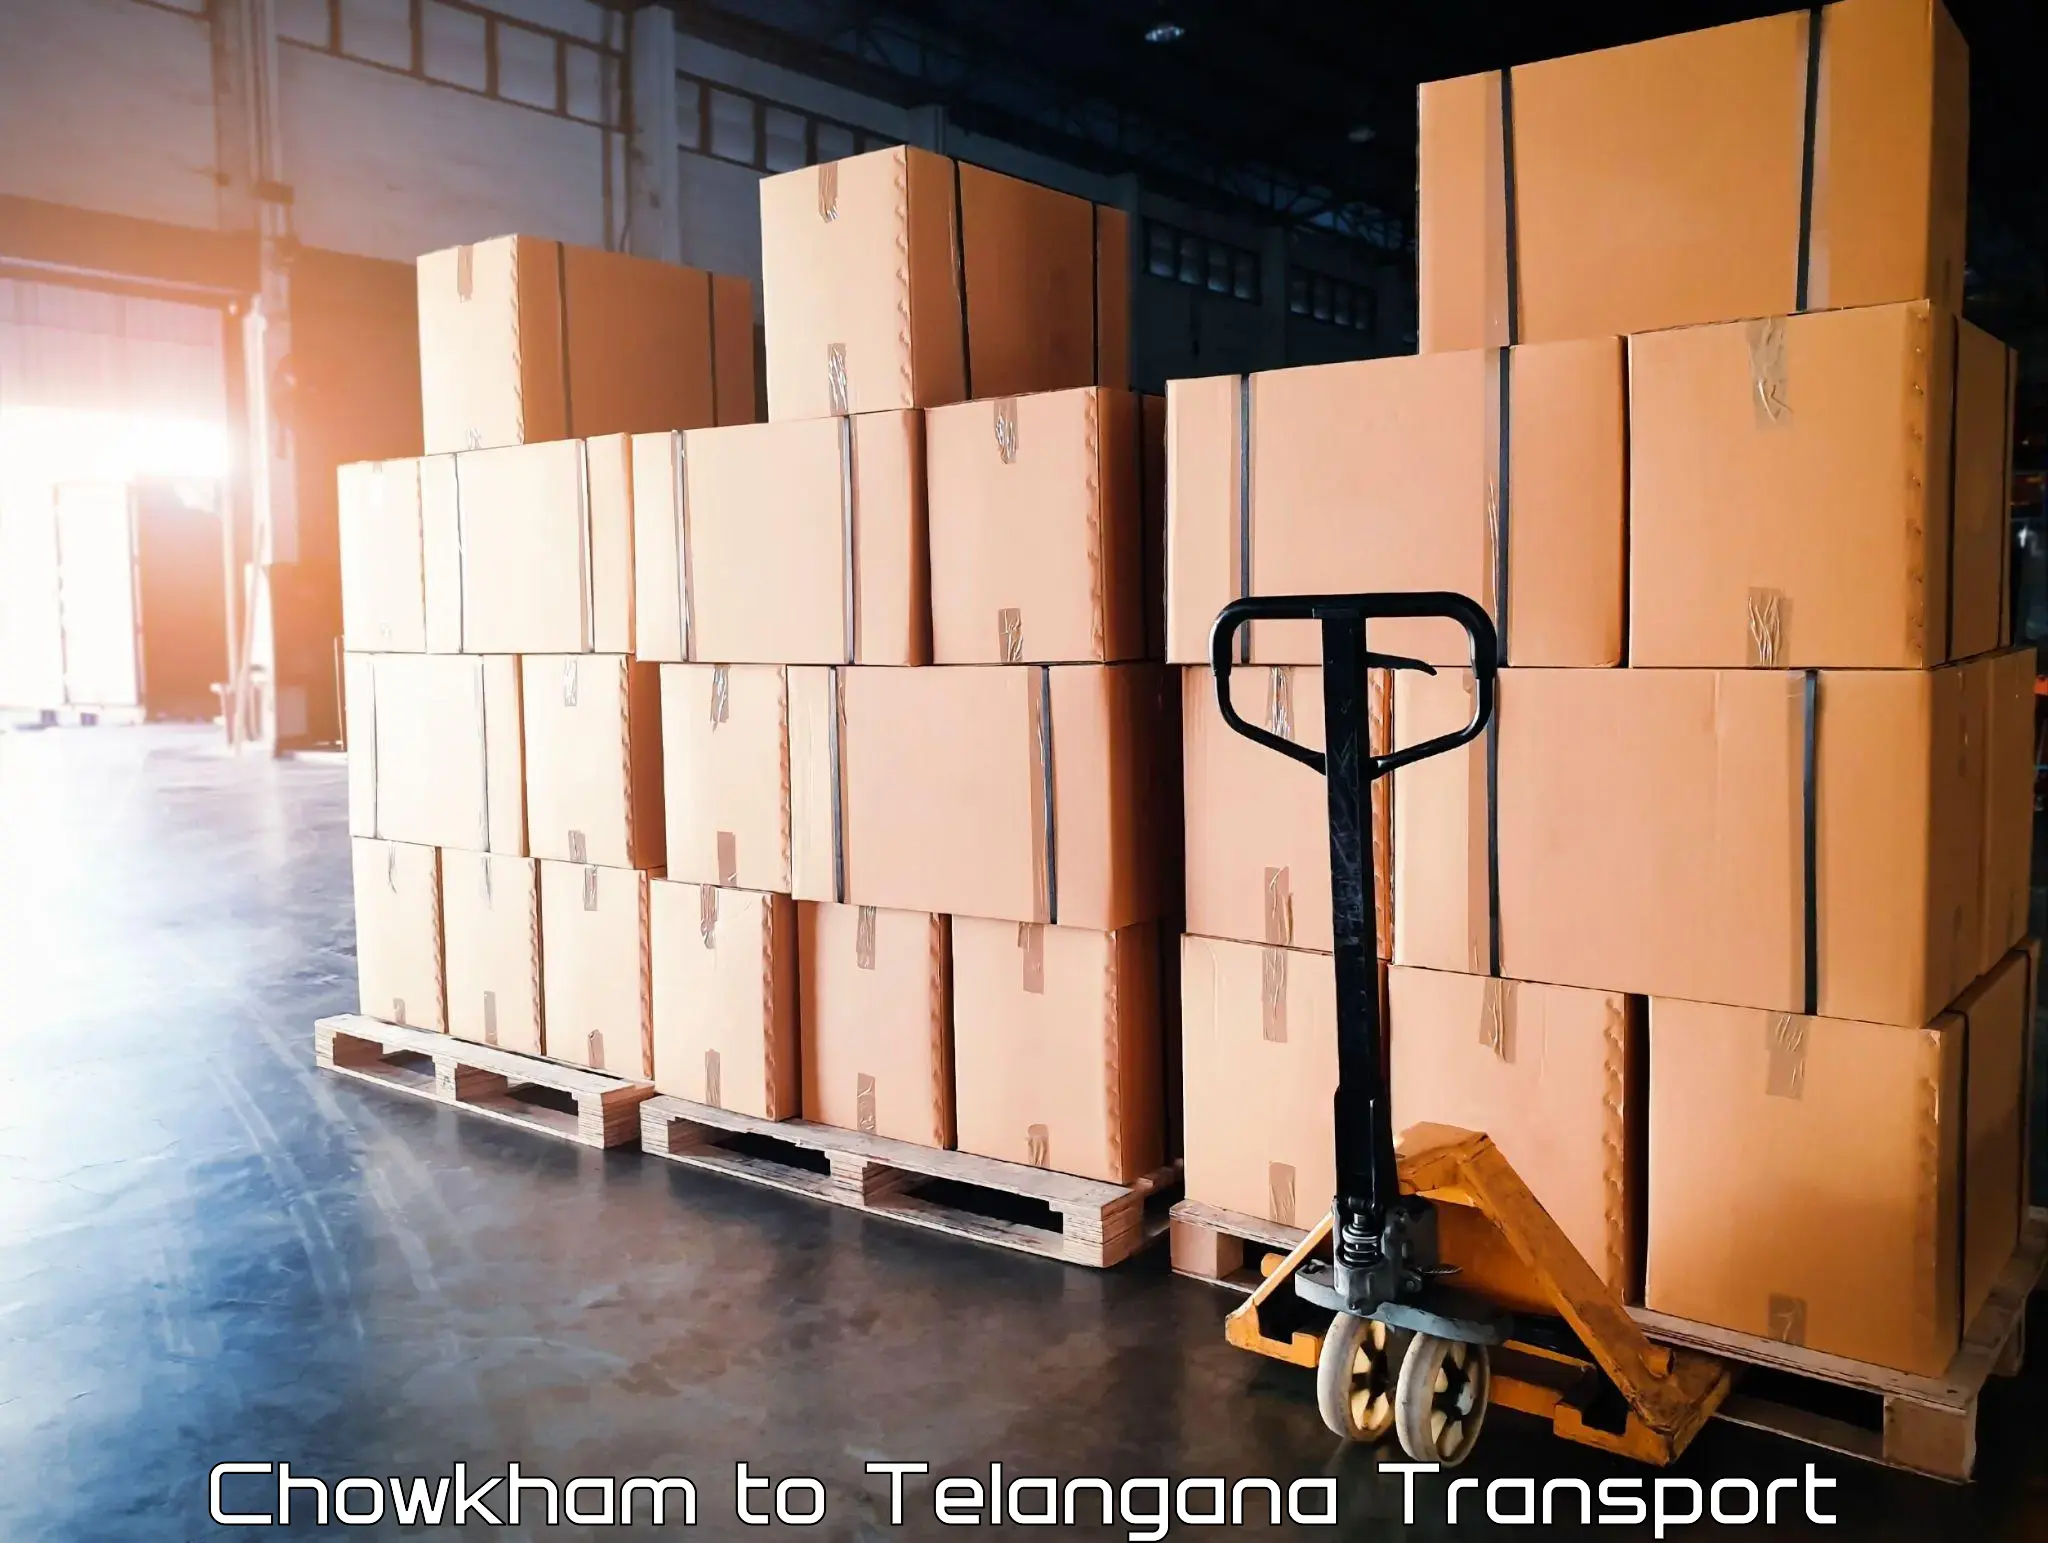 Truck transport companies in India Chowkham to Mudigonda